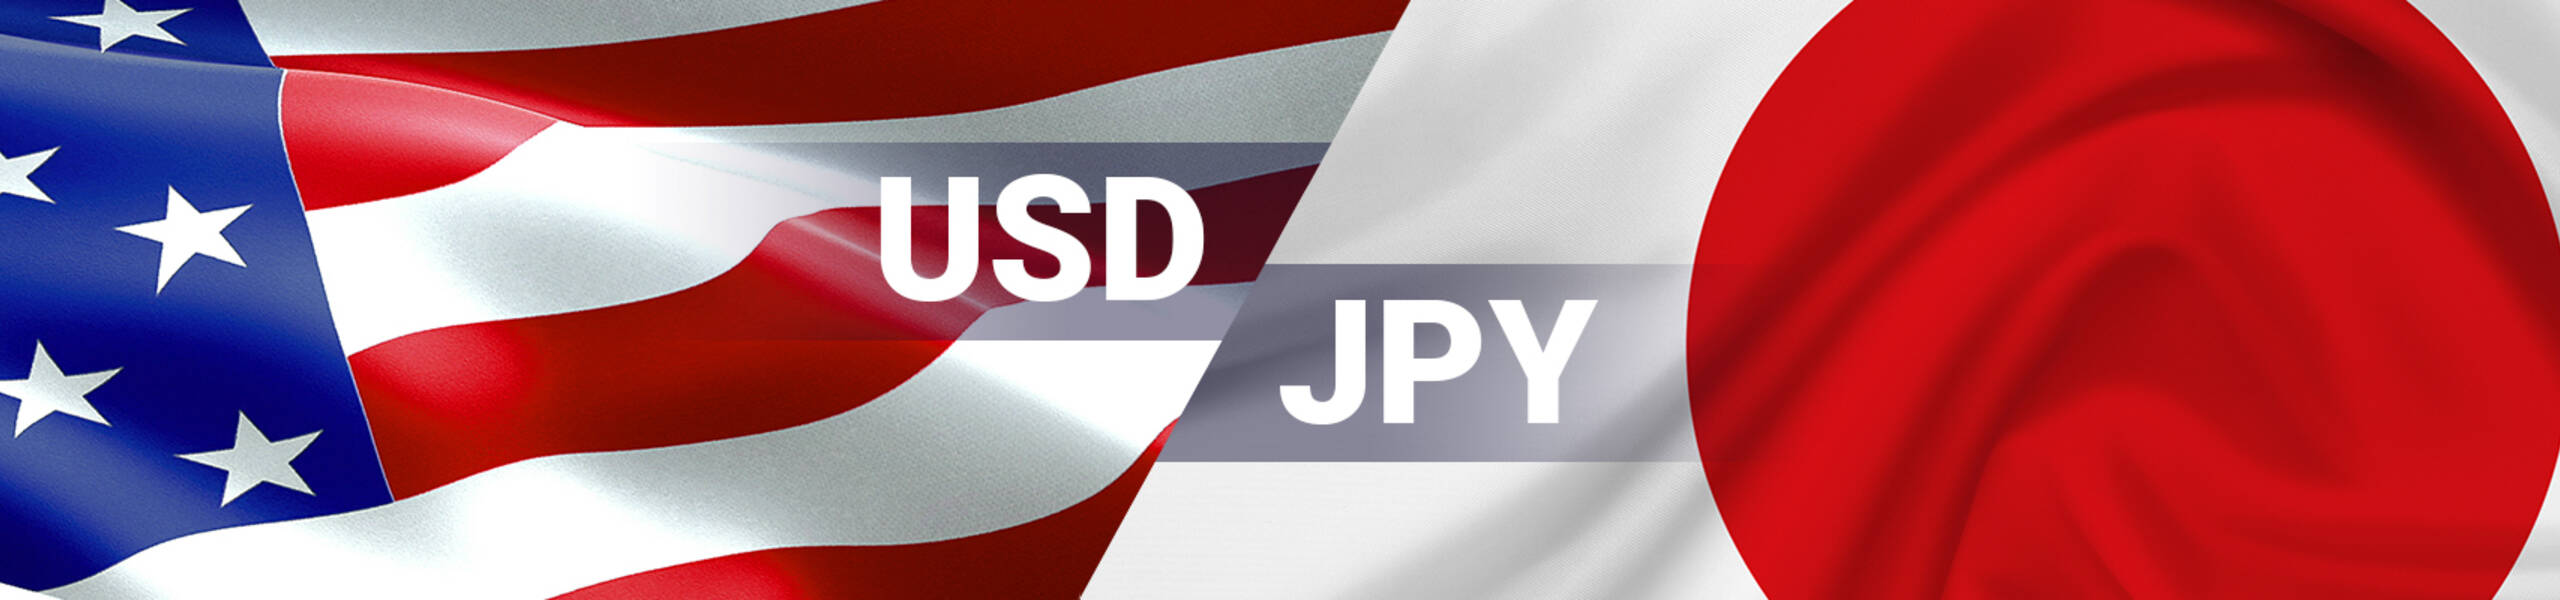 USD/JPY encontrando demanda sobre el 105.81